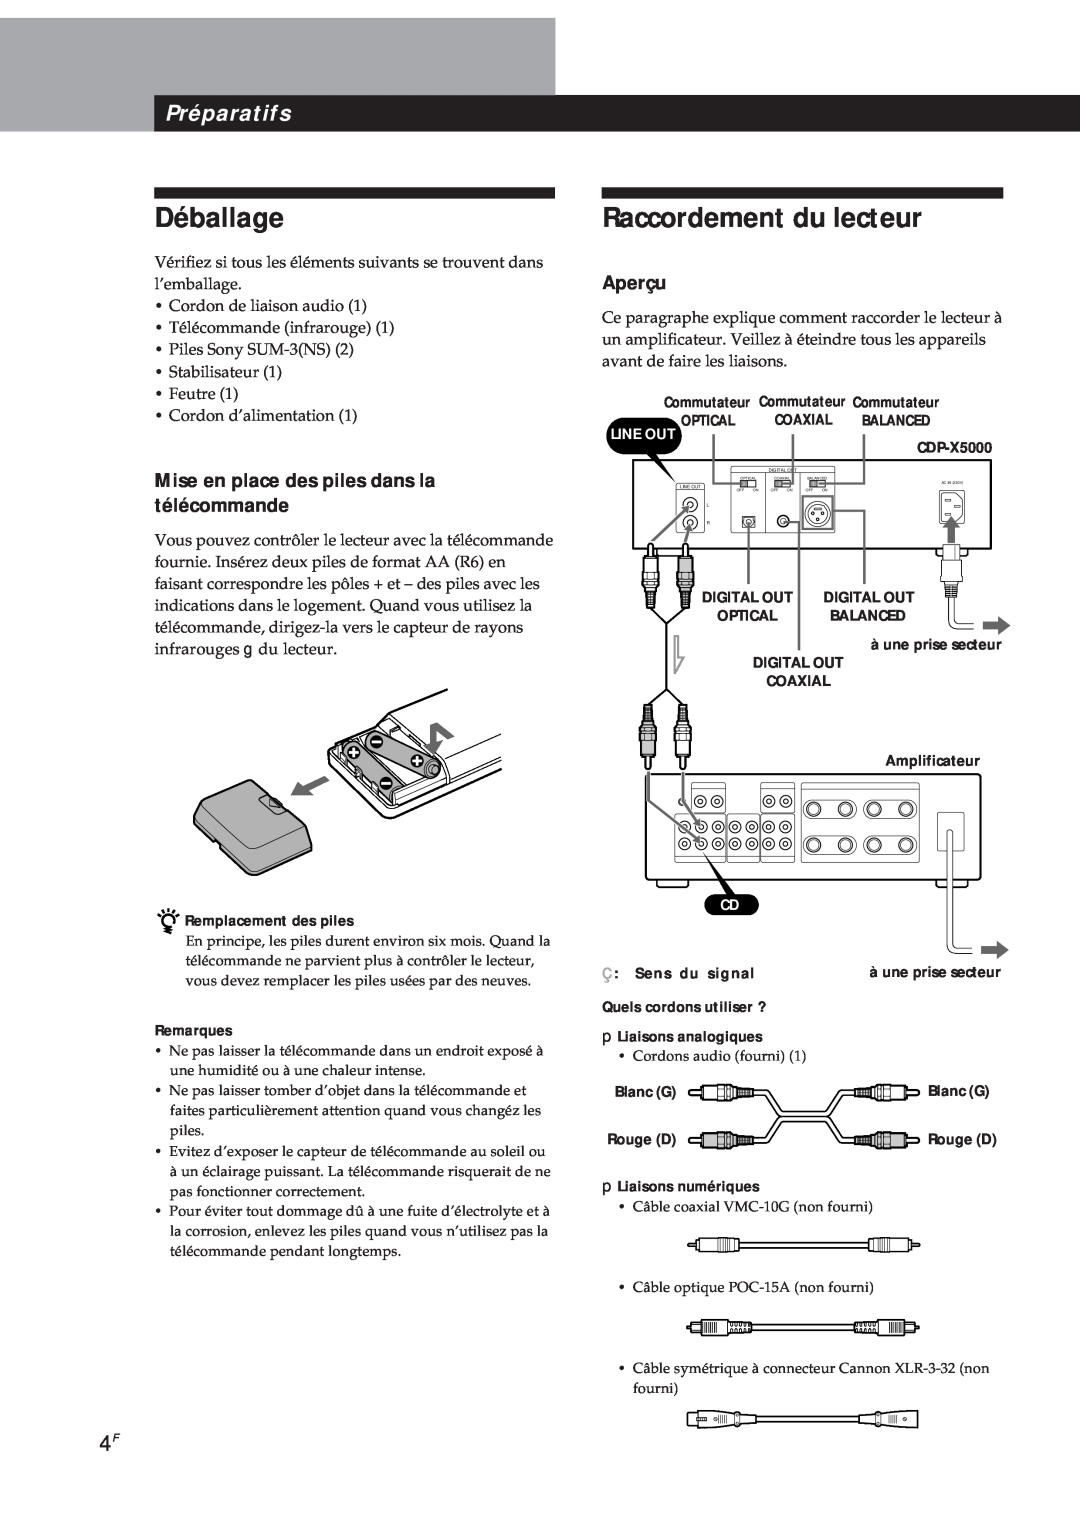 Sony CDP-X5000 manual Déballage, Raccordement du lecteur, Préparatifs, Mise en place des piles dans la télécommande, Aperçu 